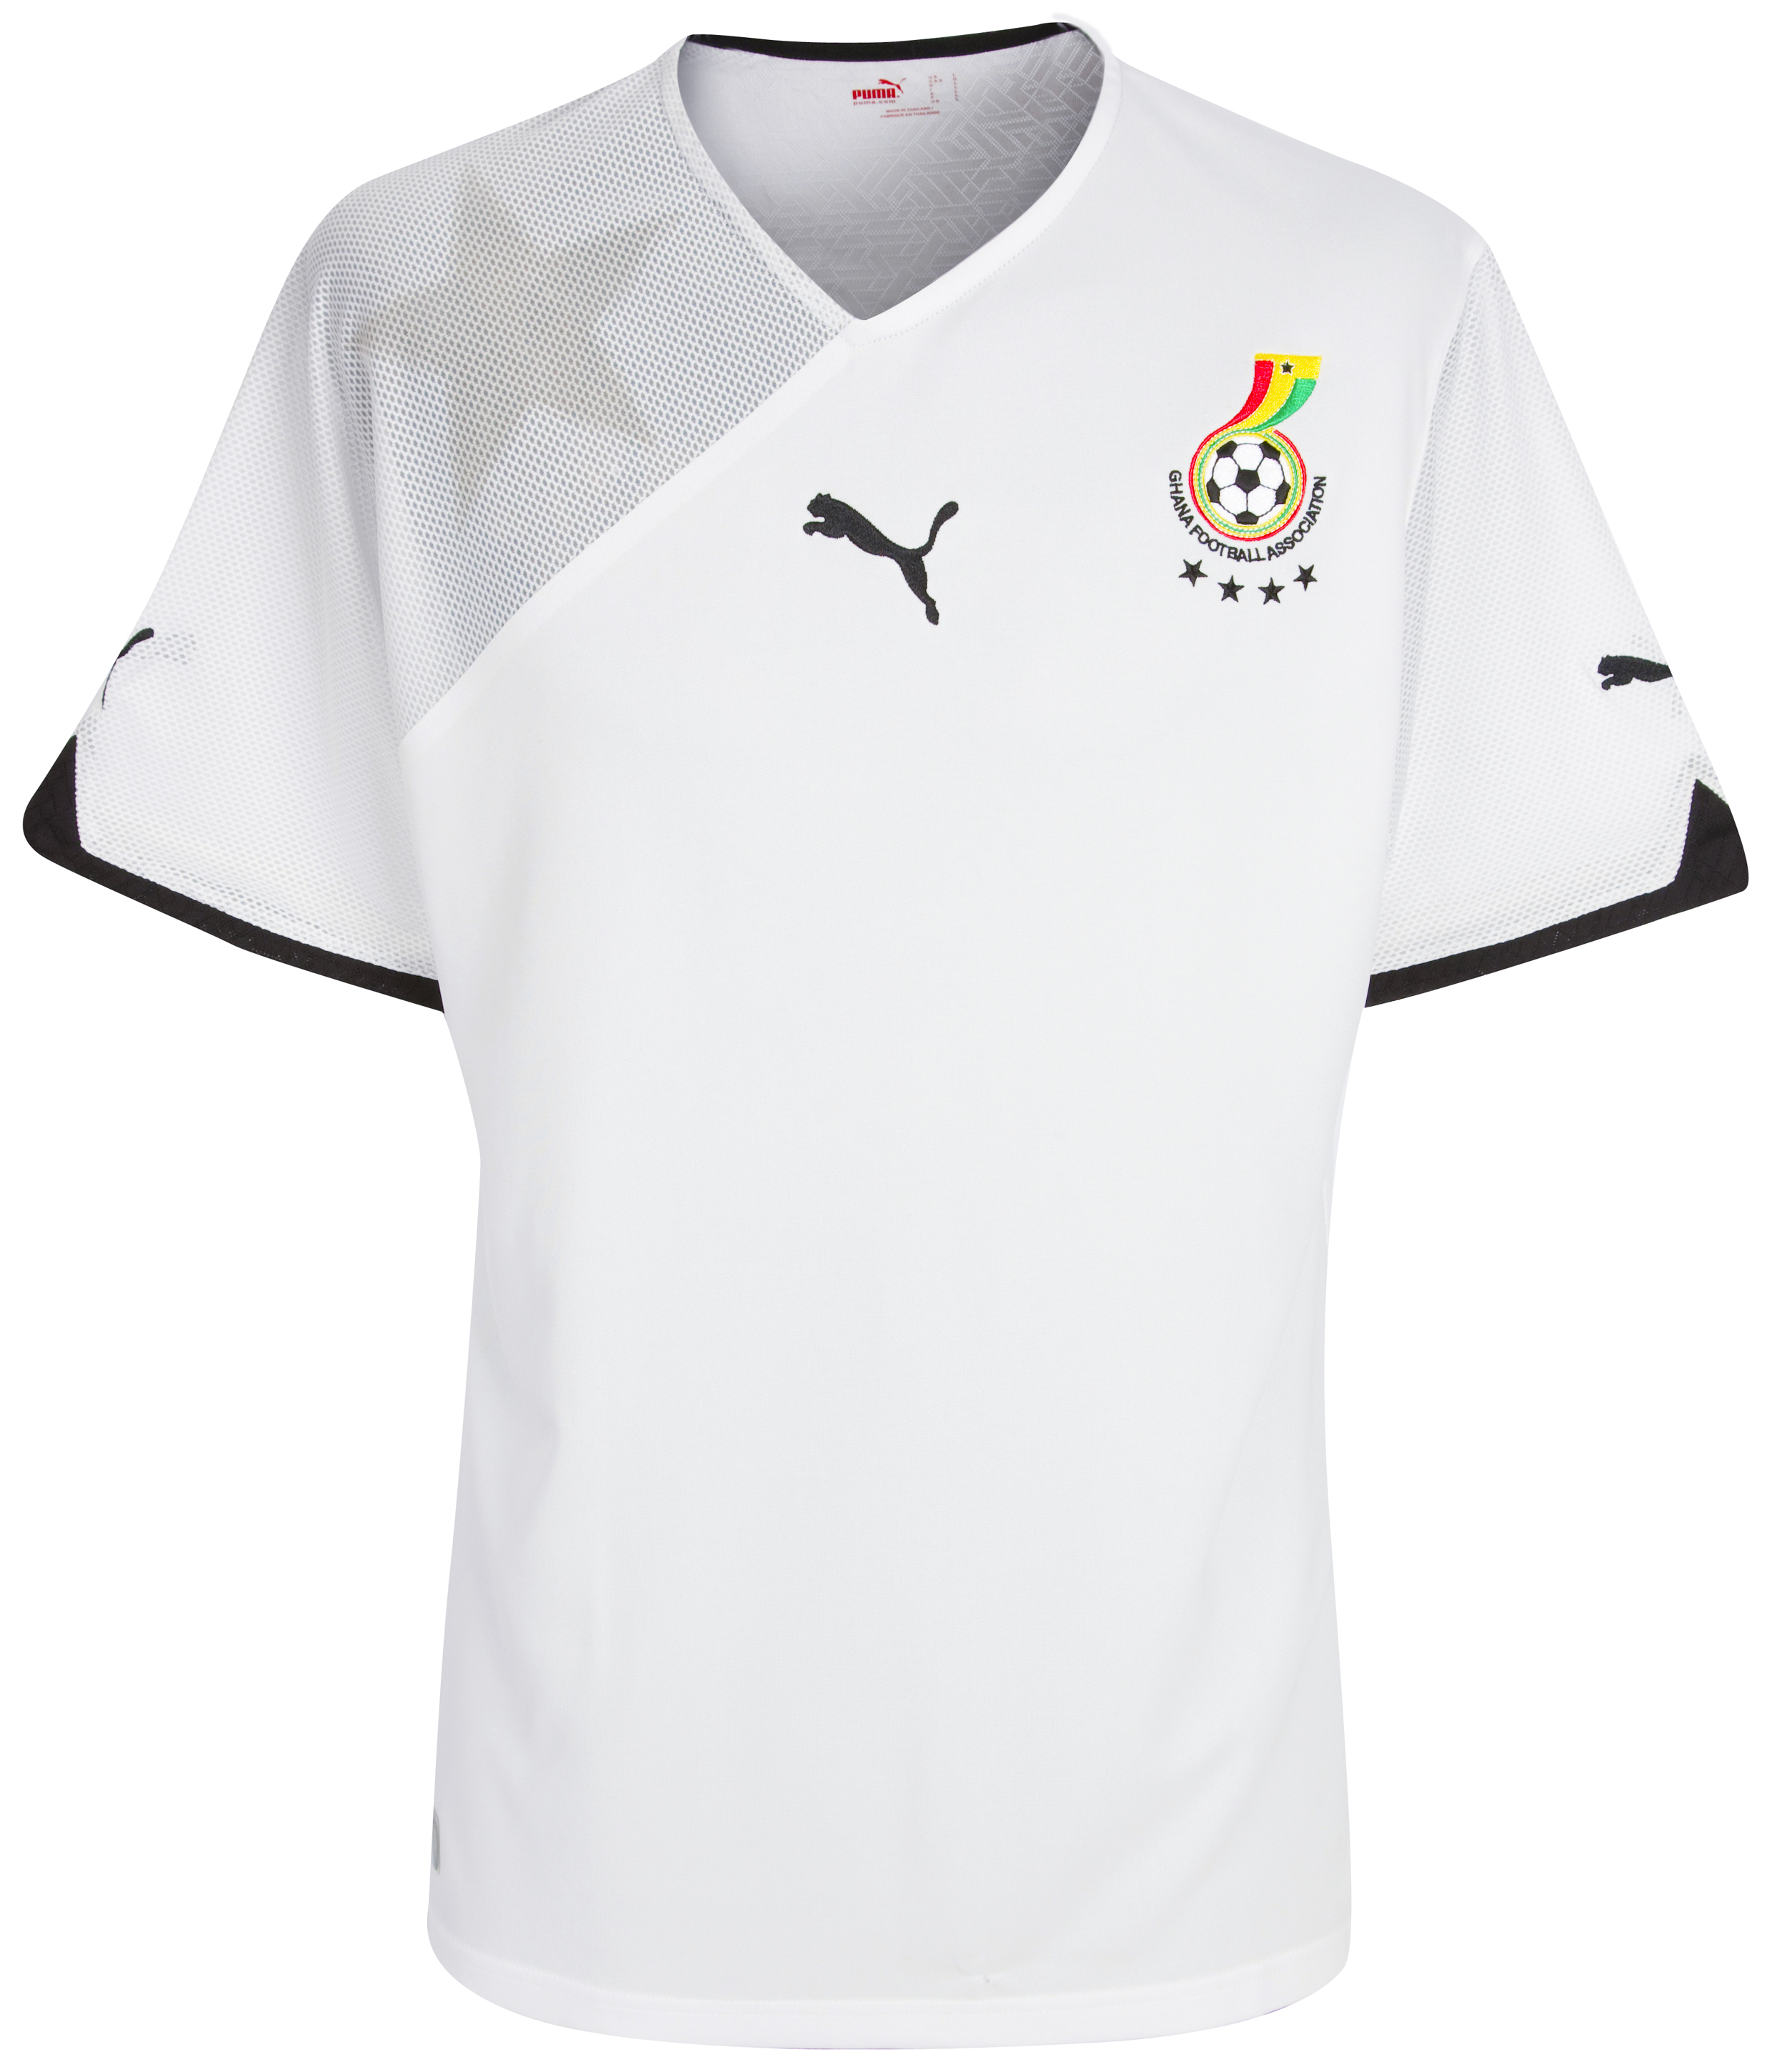 .¸-(_ (قمصان جميع المنتخبات لكأس العالم 2010) _)-,. Kb-60874